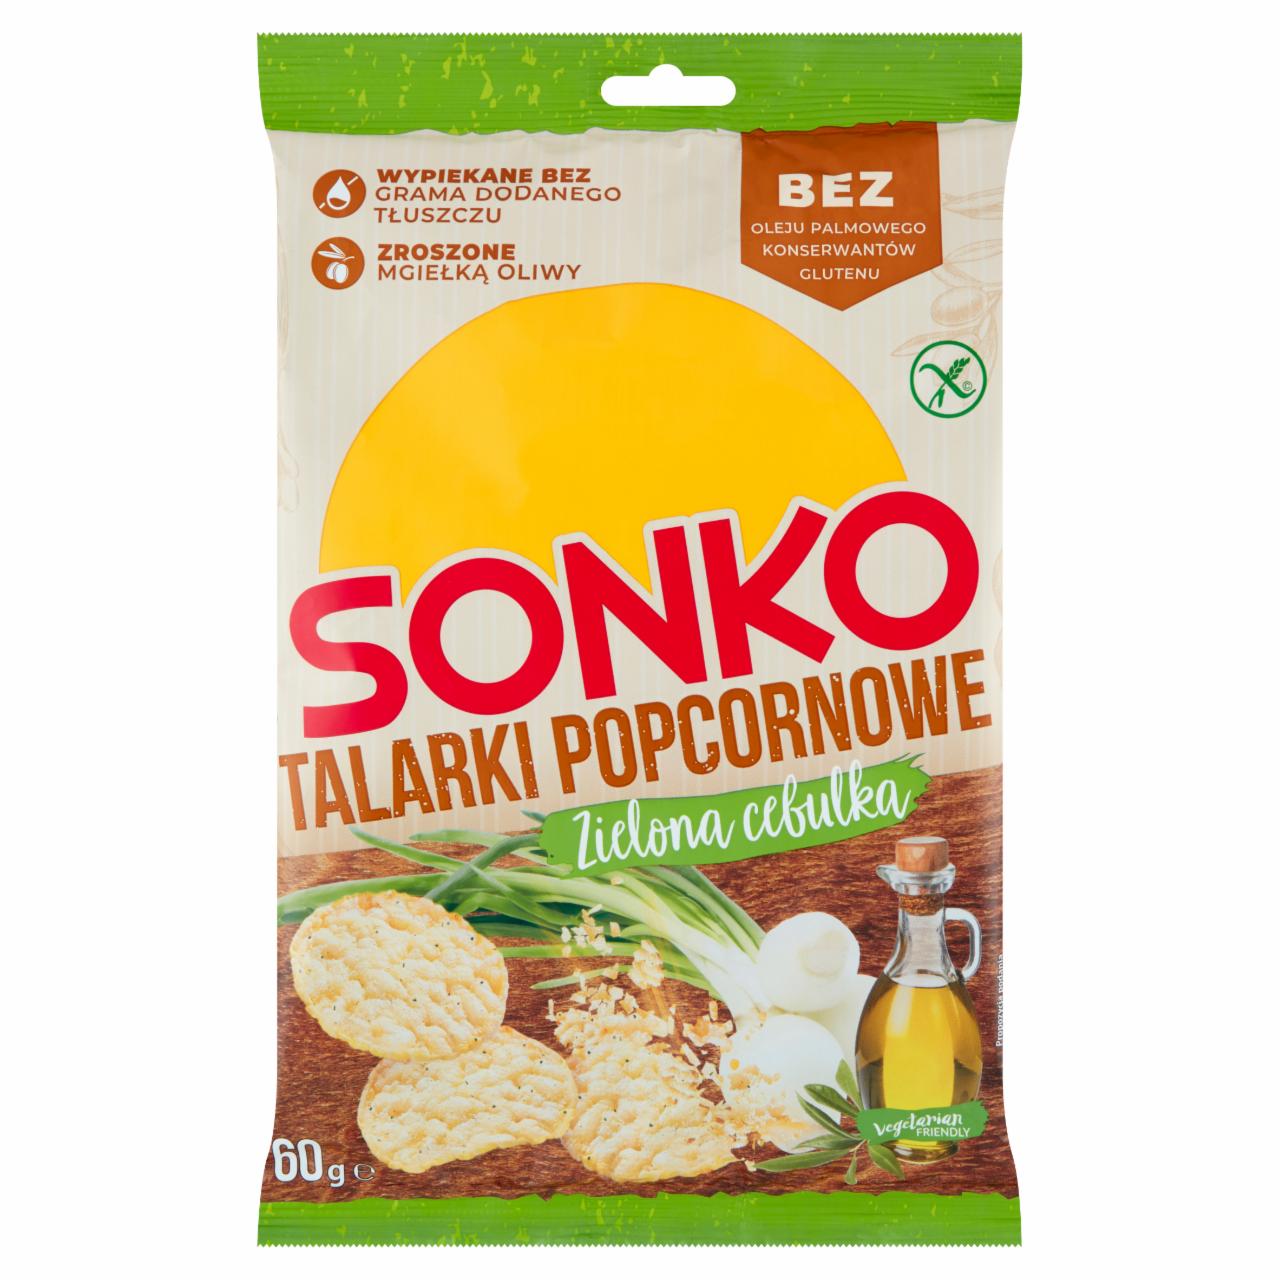 Zdjęcia - Sonko Talarki popcornowe zielona cebulka 60 g